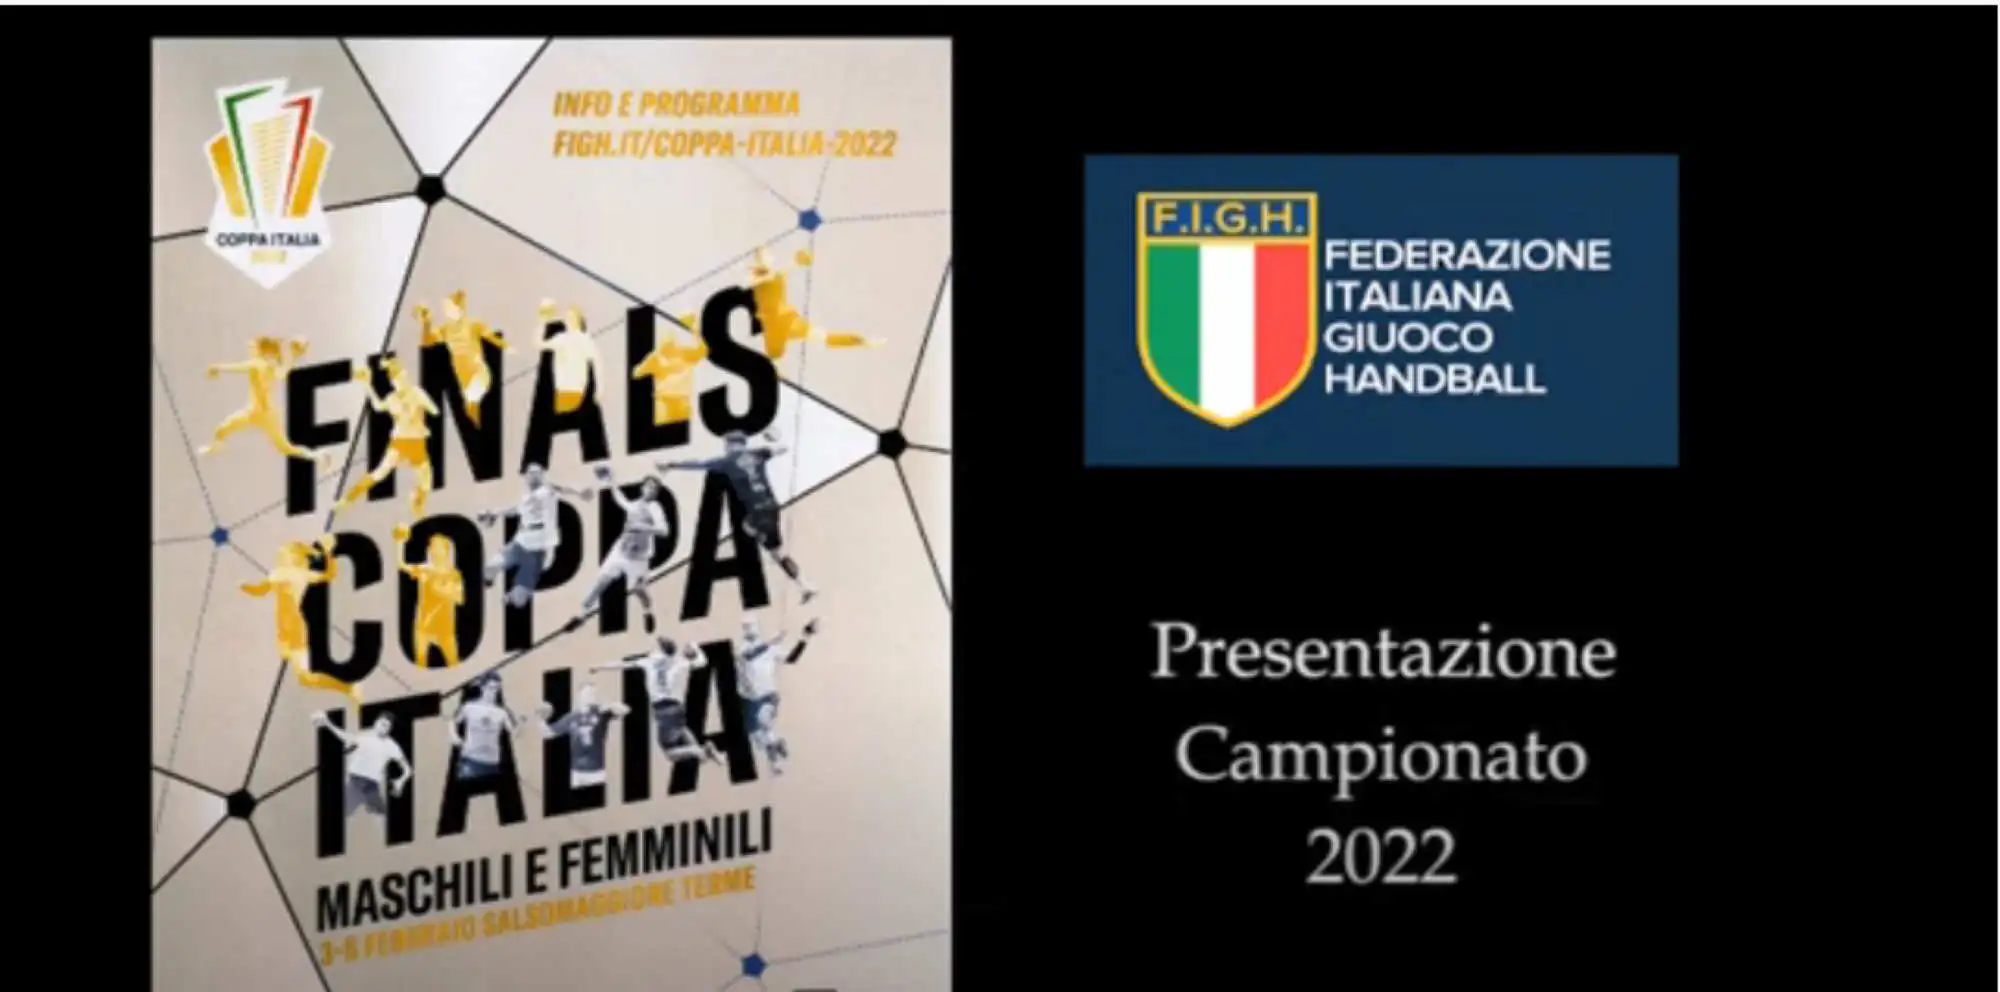 FIGH Finals 2022 Maschili Femminili